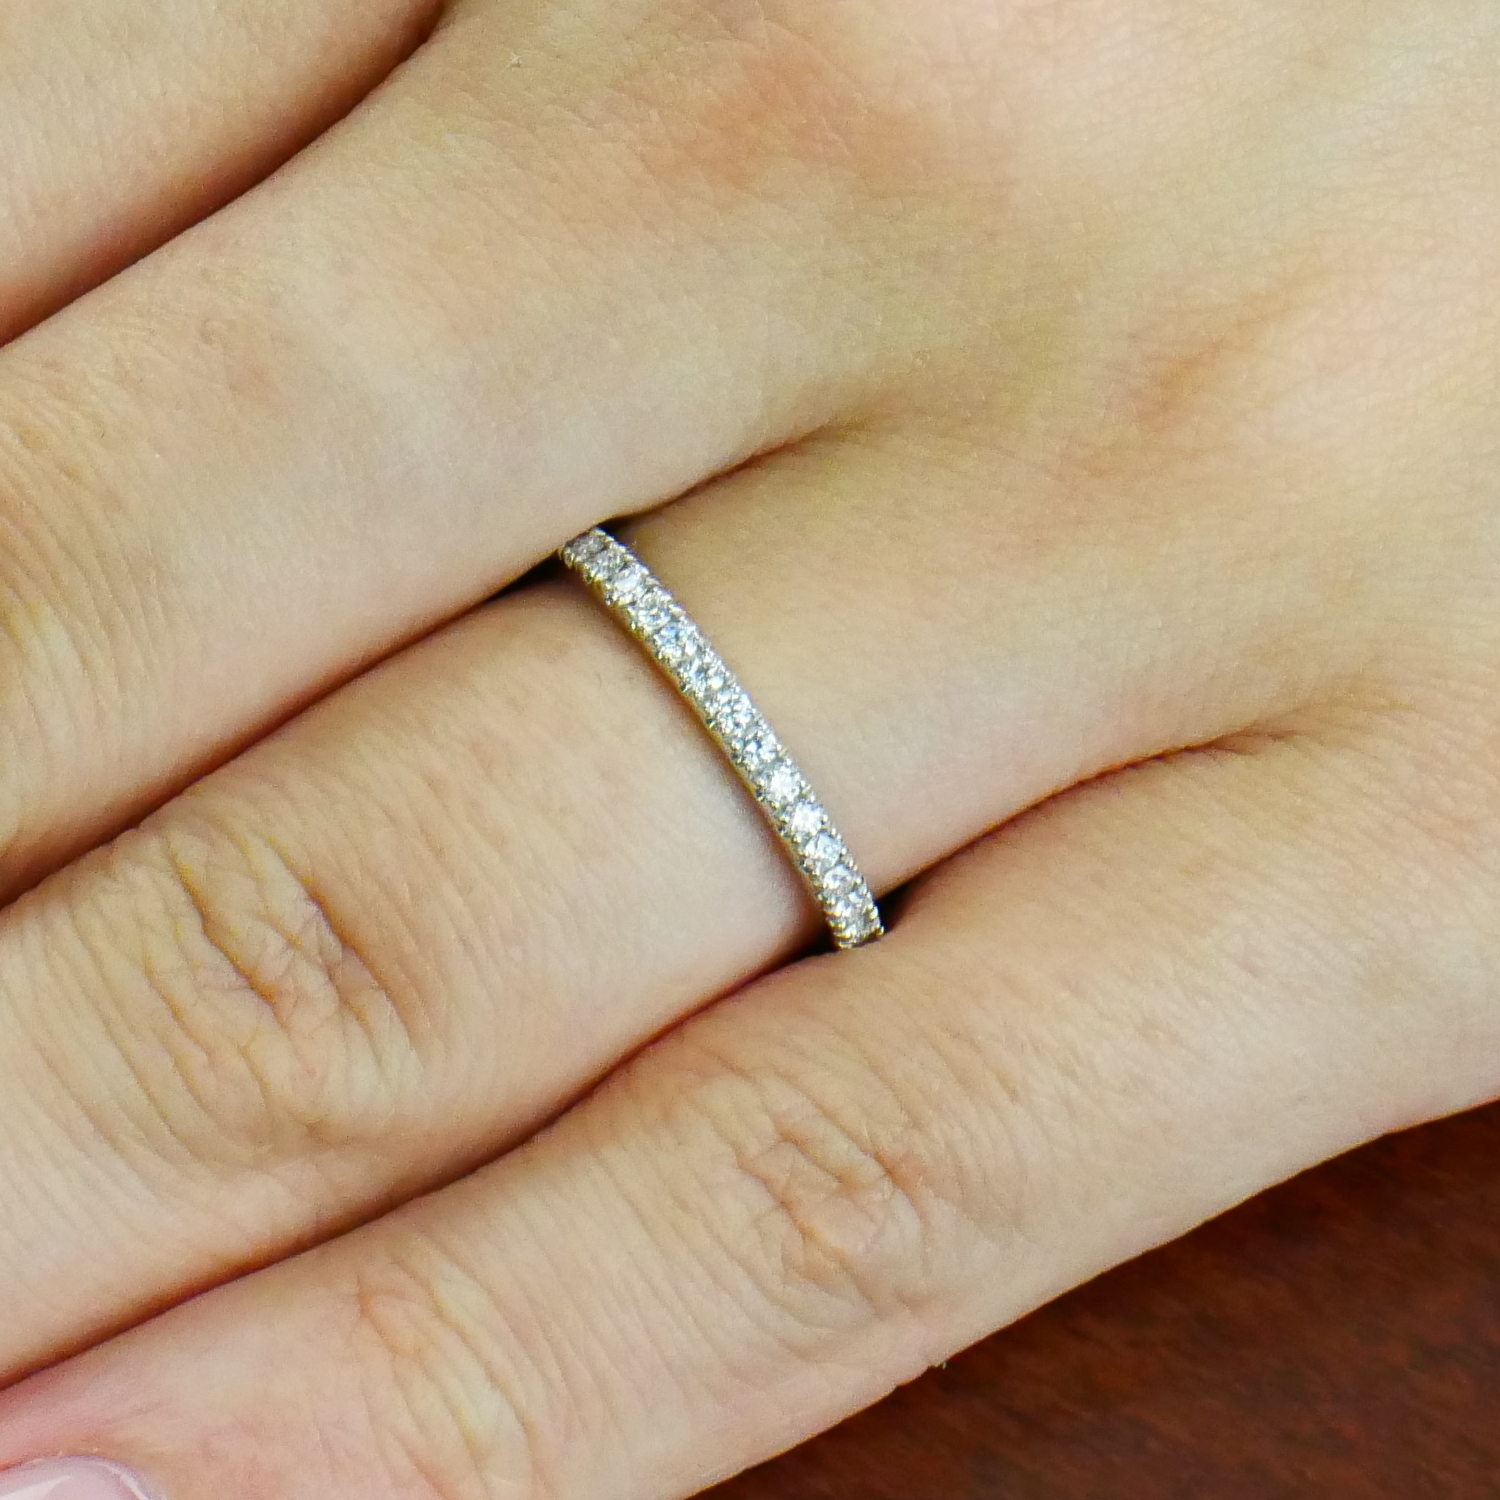 エタニティリング 爪留め 代の方の結婚指輪 重ね付けに エタニティリング通販 山梨 甲府のジュエリーブランドizuru